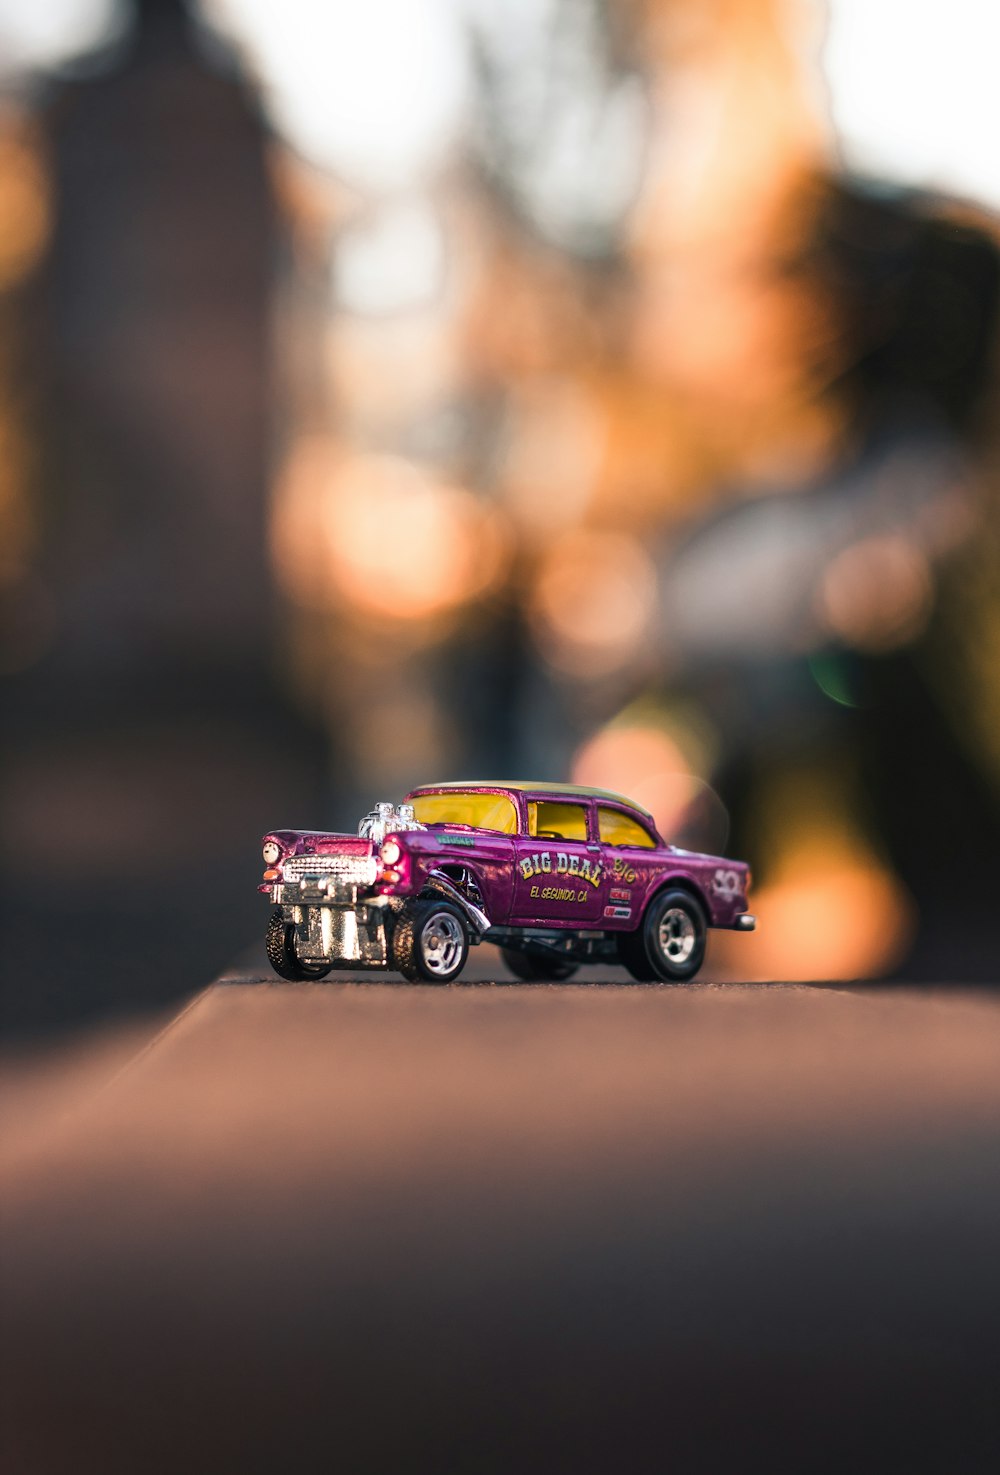 modello in scala di auto giocattolo viola